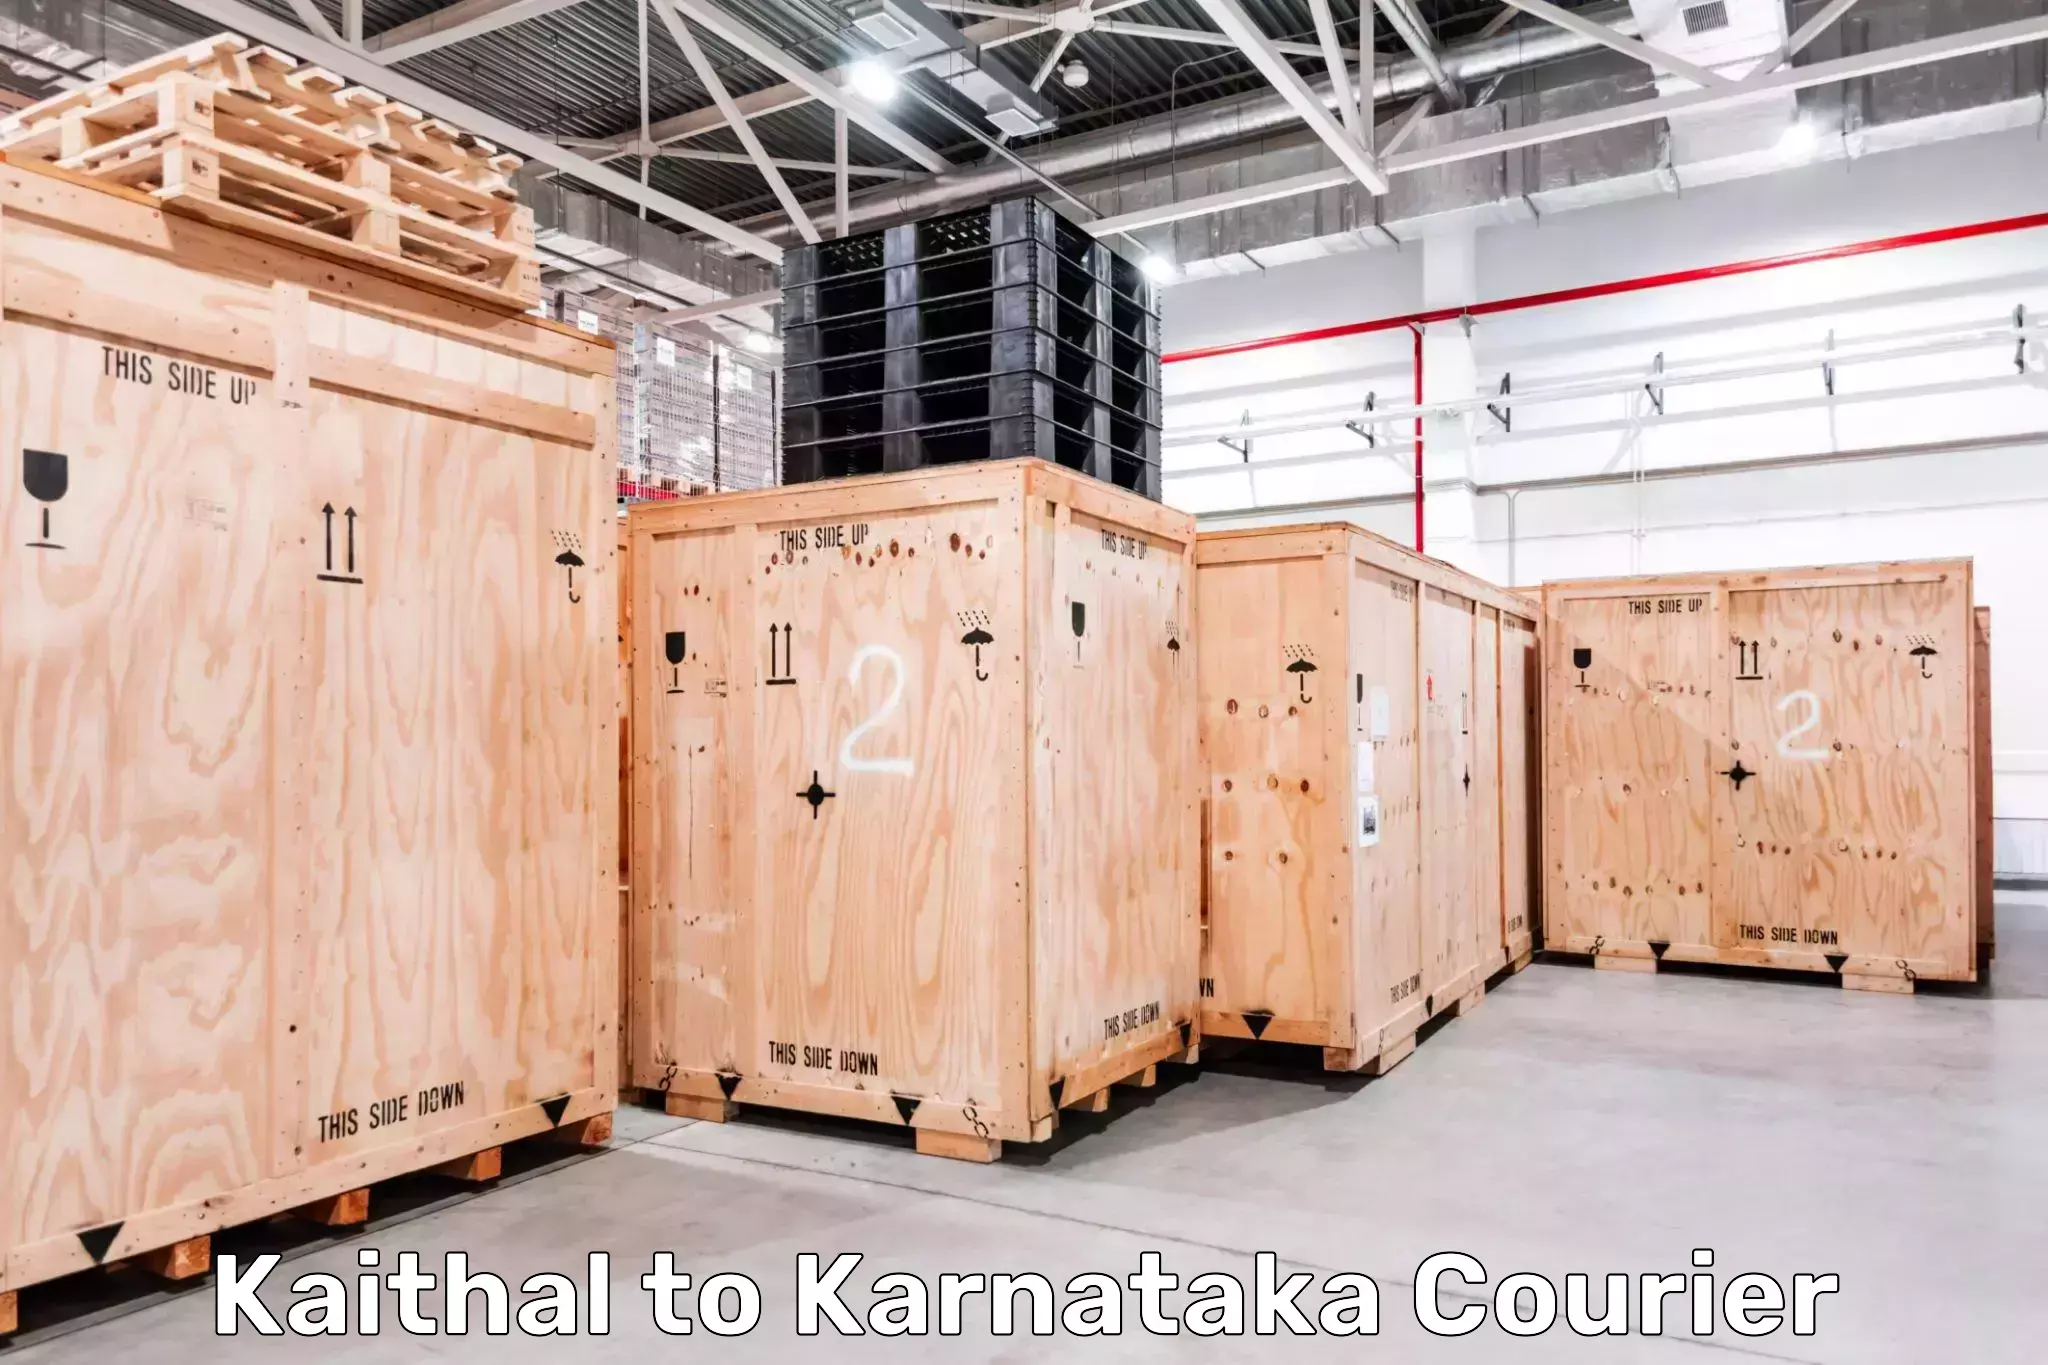 Next-day freight services Kaithal to Karnataka